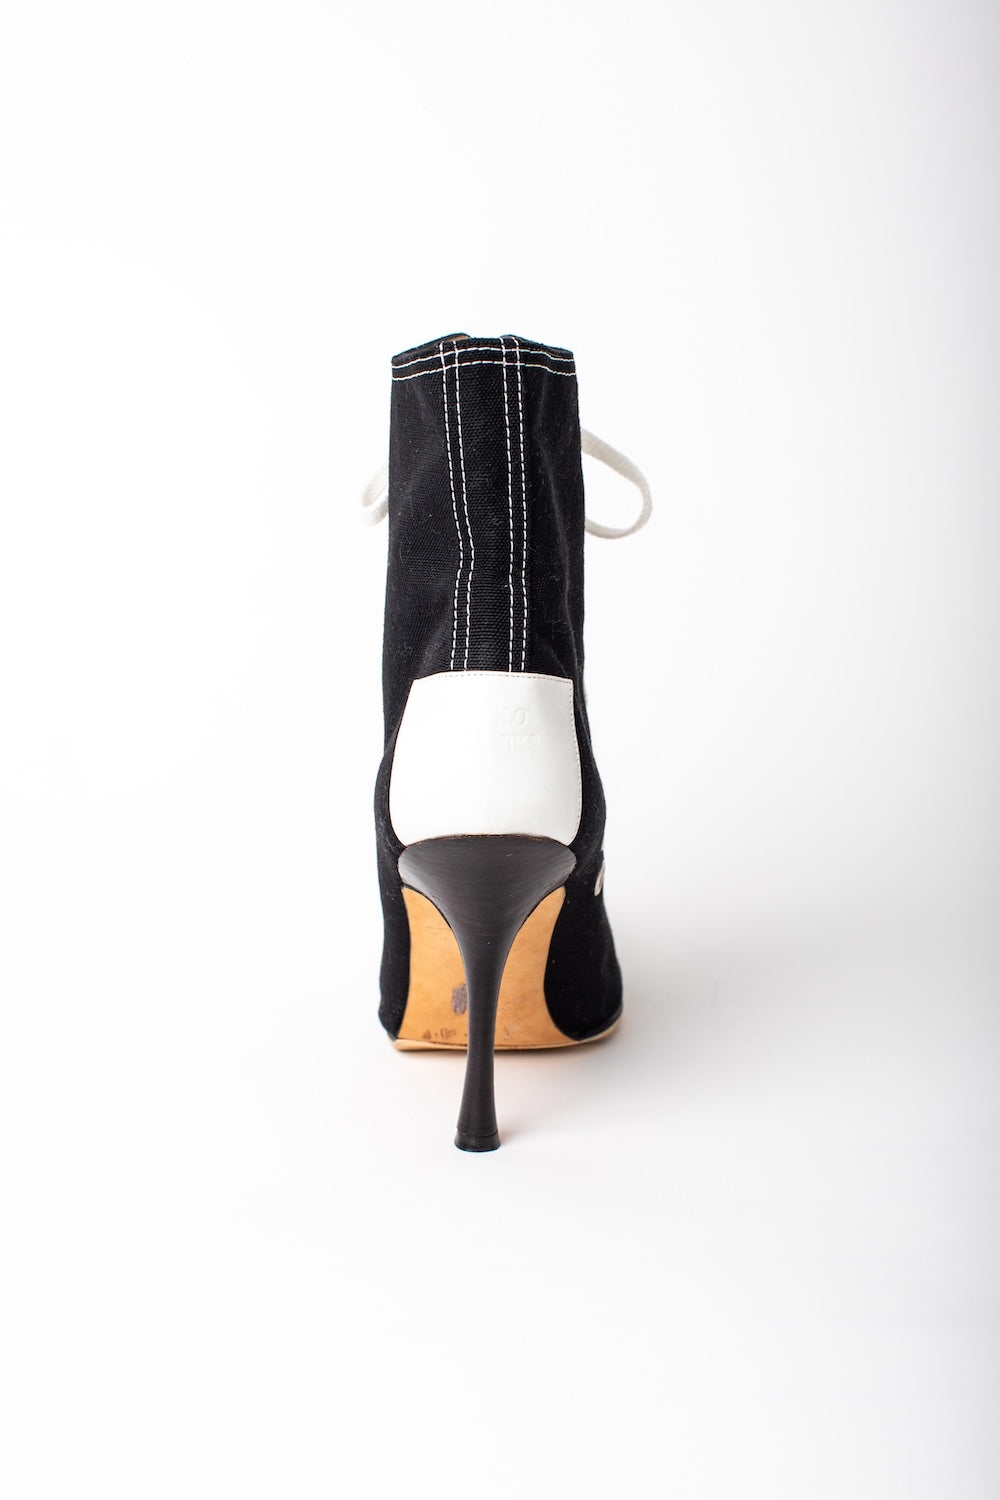 Manolo Blahnik <br> Y2K lace up sneaker stiletto boots